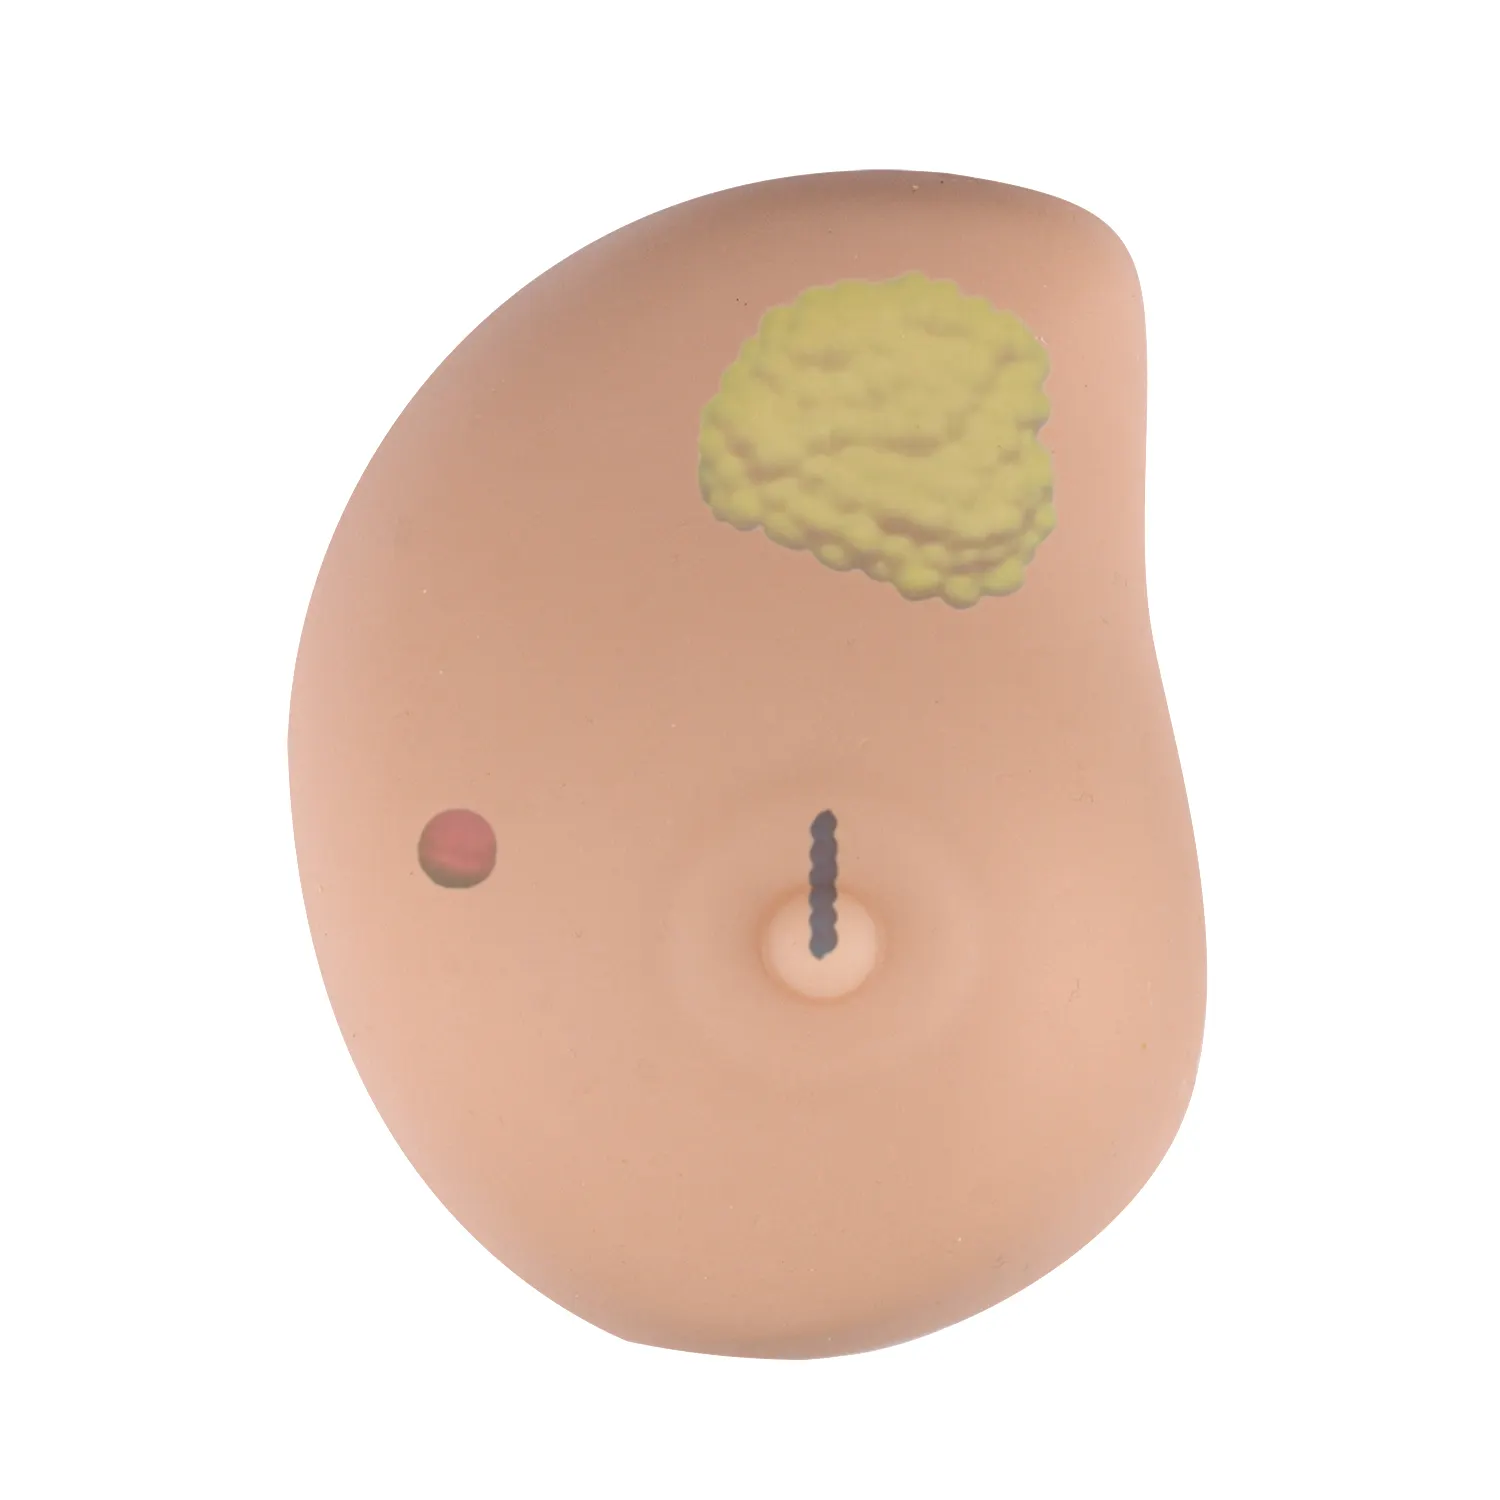 Modelo anatômico do câncer da mama do silicone auto-exam